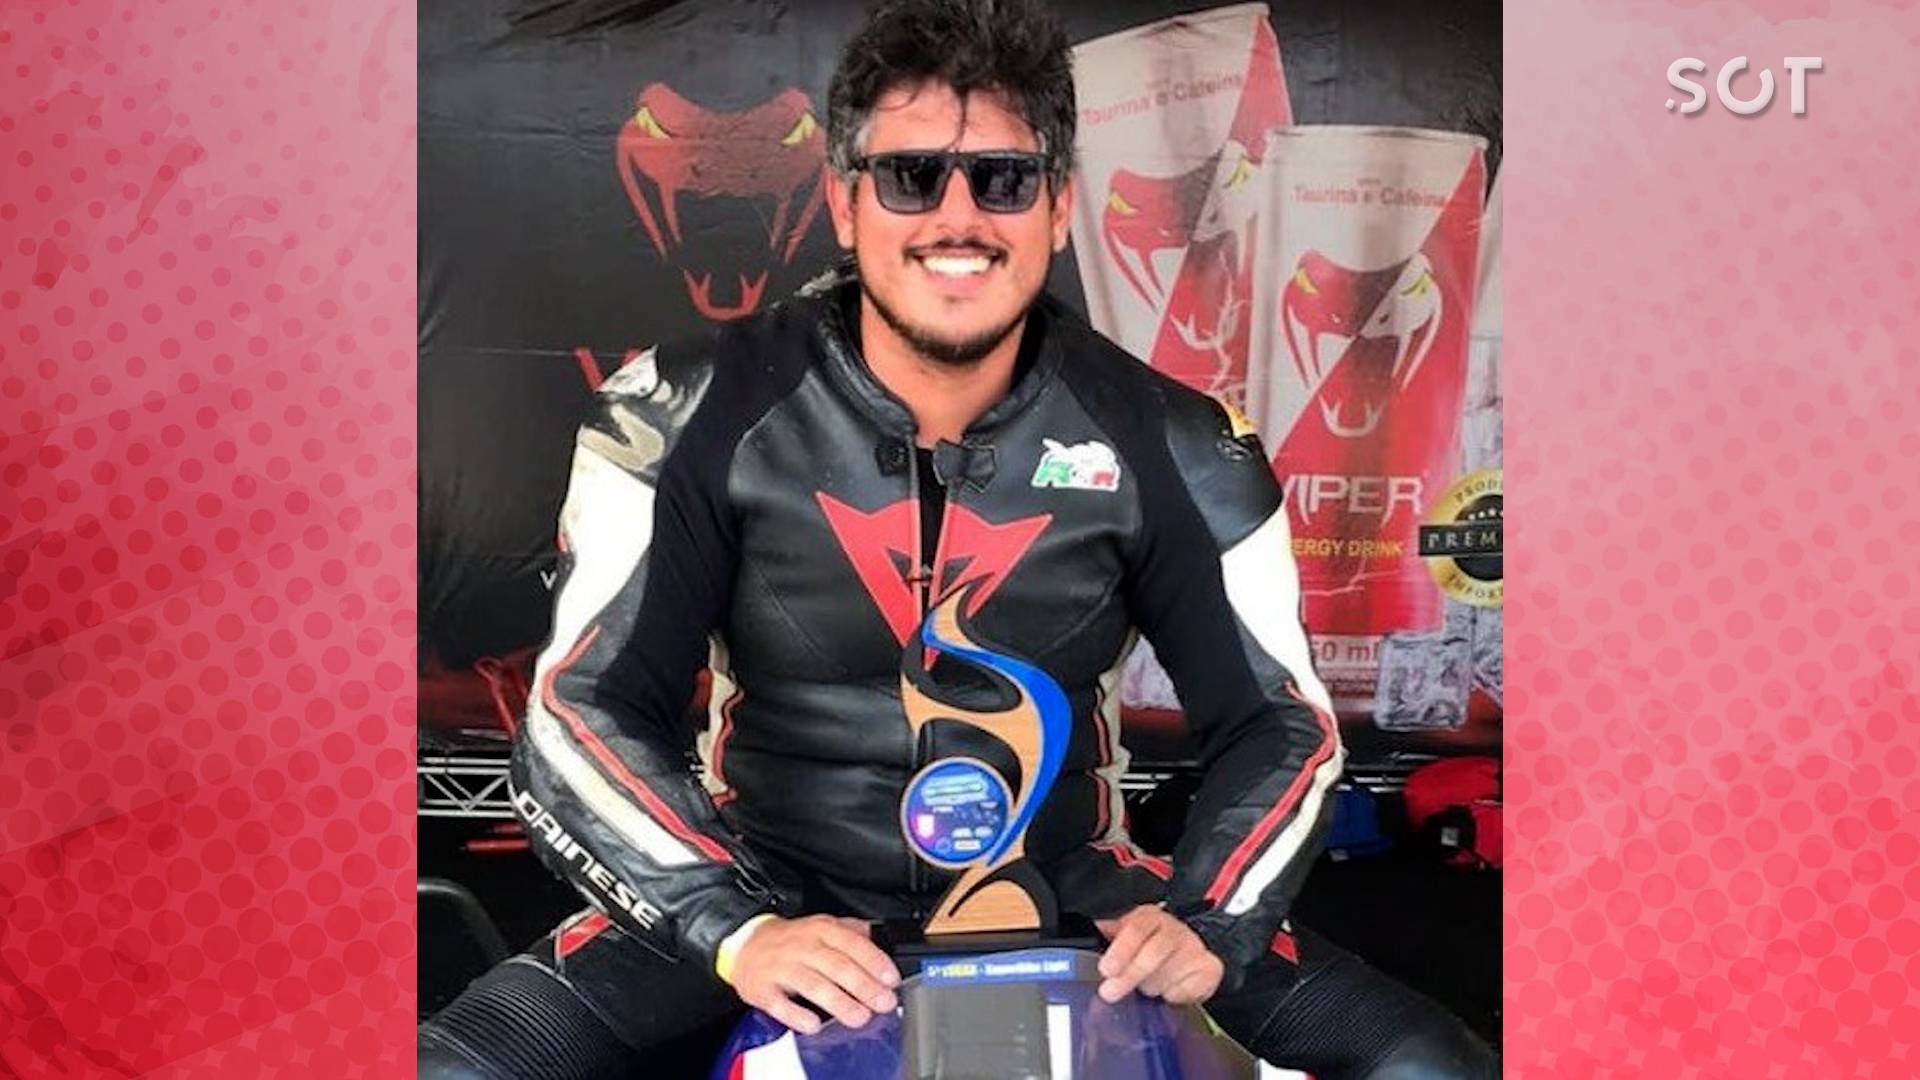 Imagens impressionantes: Grave acidente interrompe corrida da Moto 1000 GP  em Cascavel - SOT